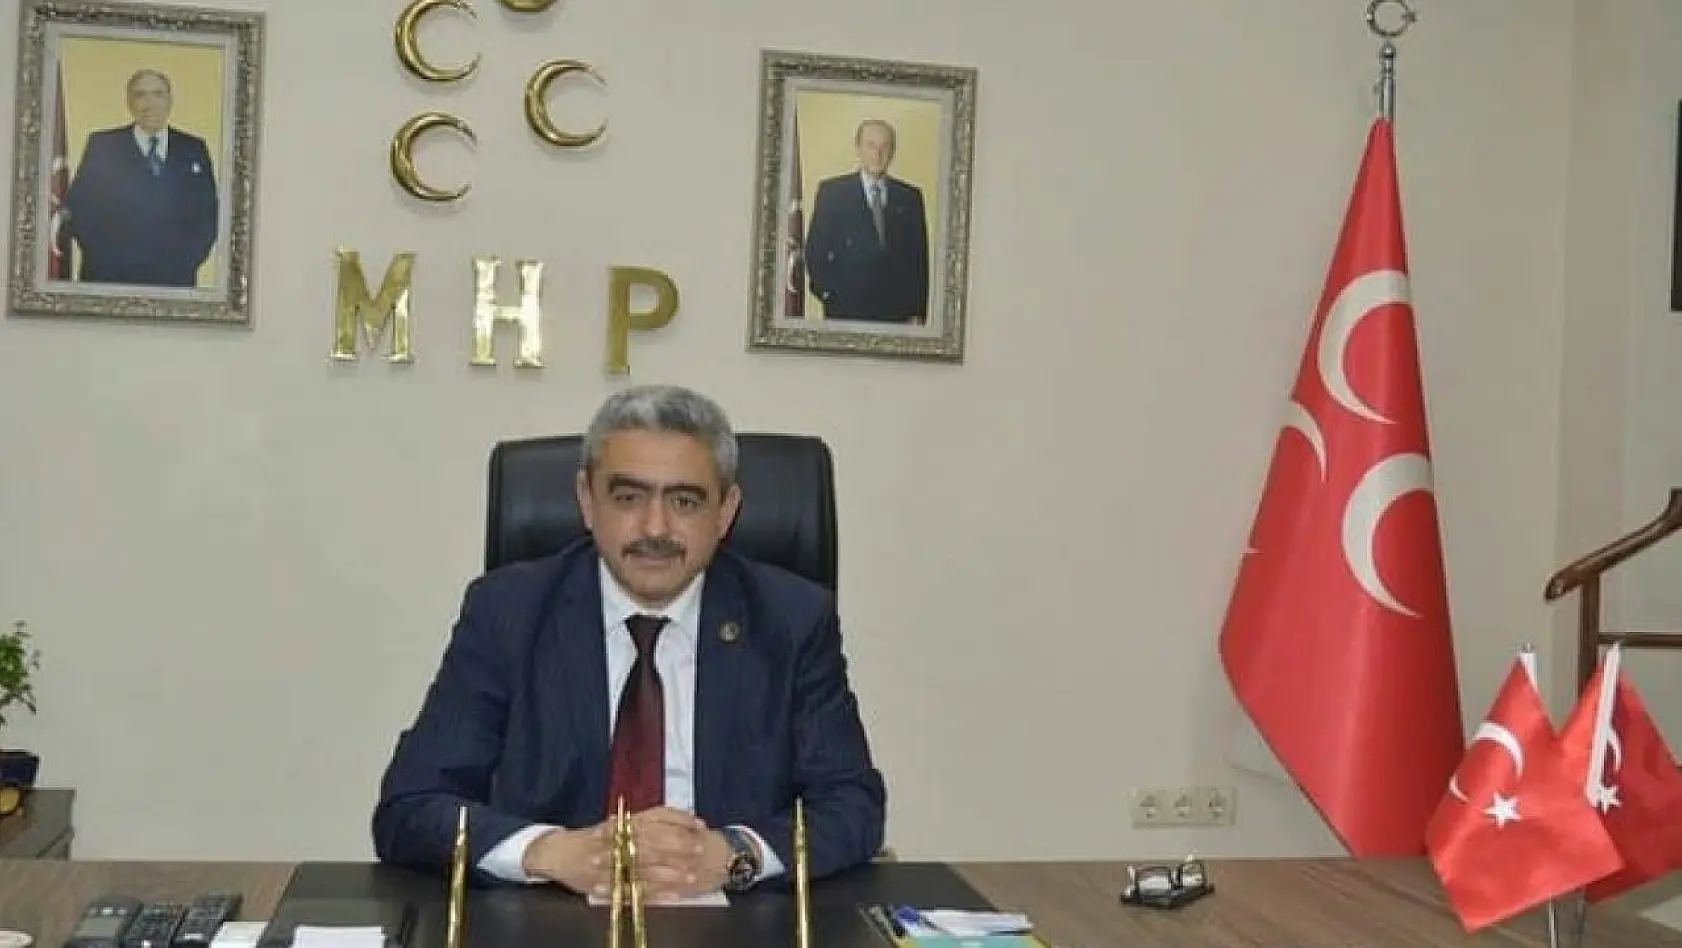 MHP'li Alıcık: 'Artık darbeler dönemi kapanmıştır'